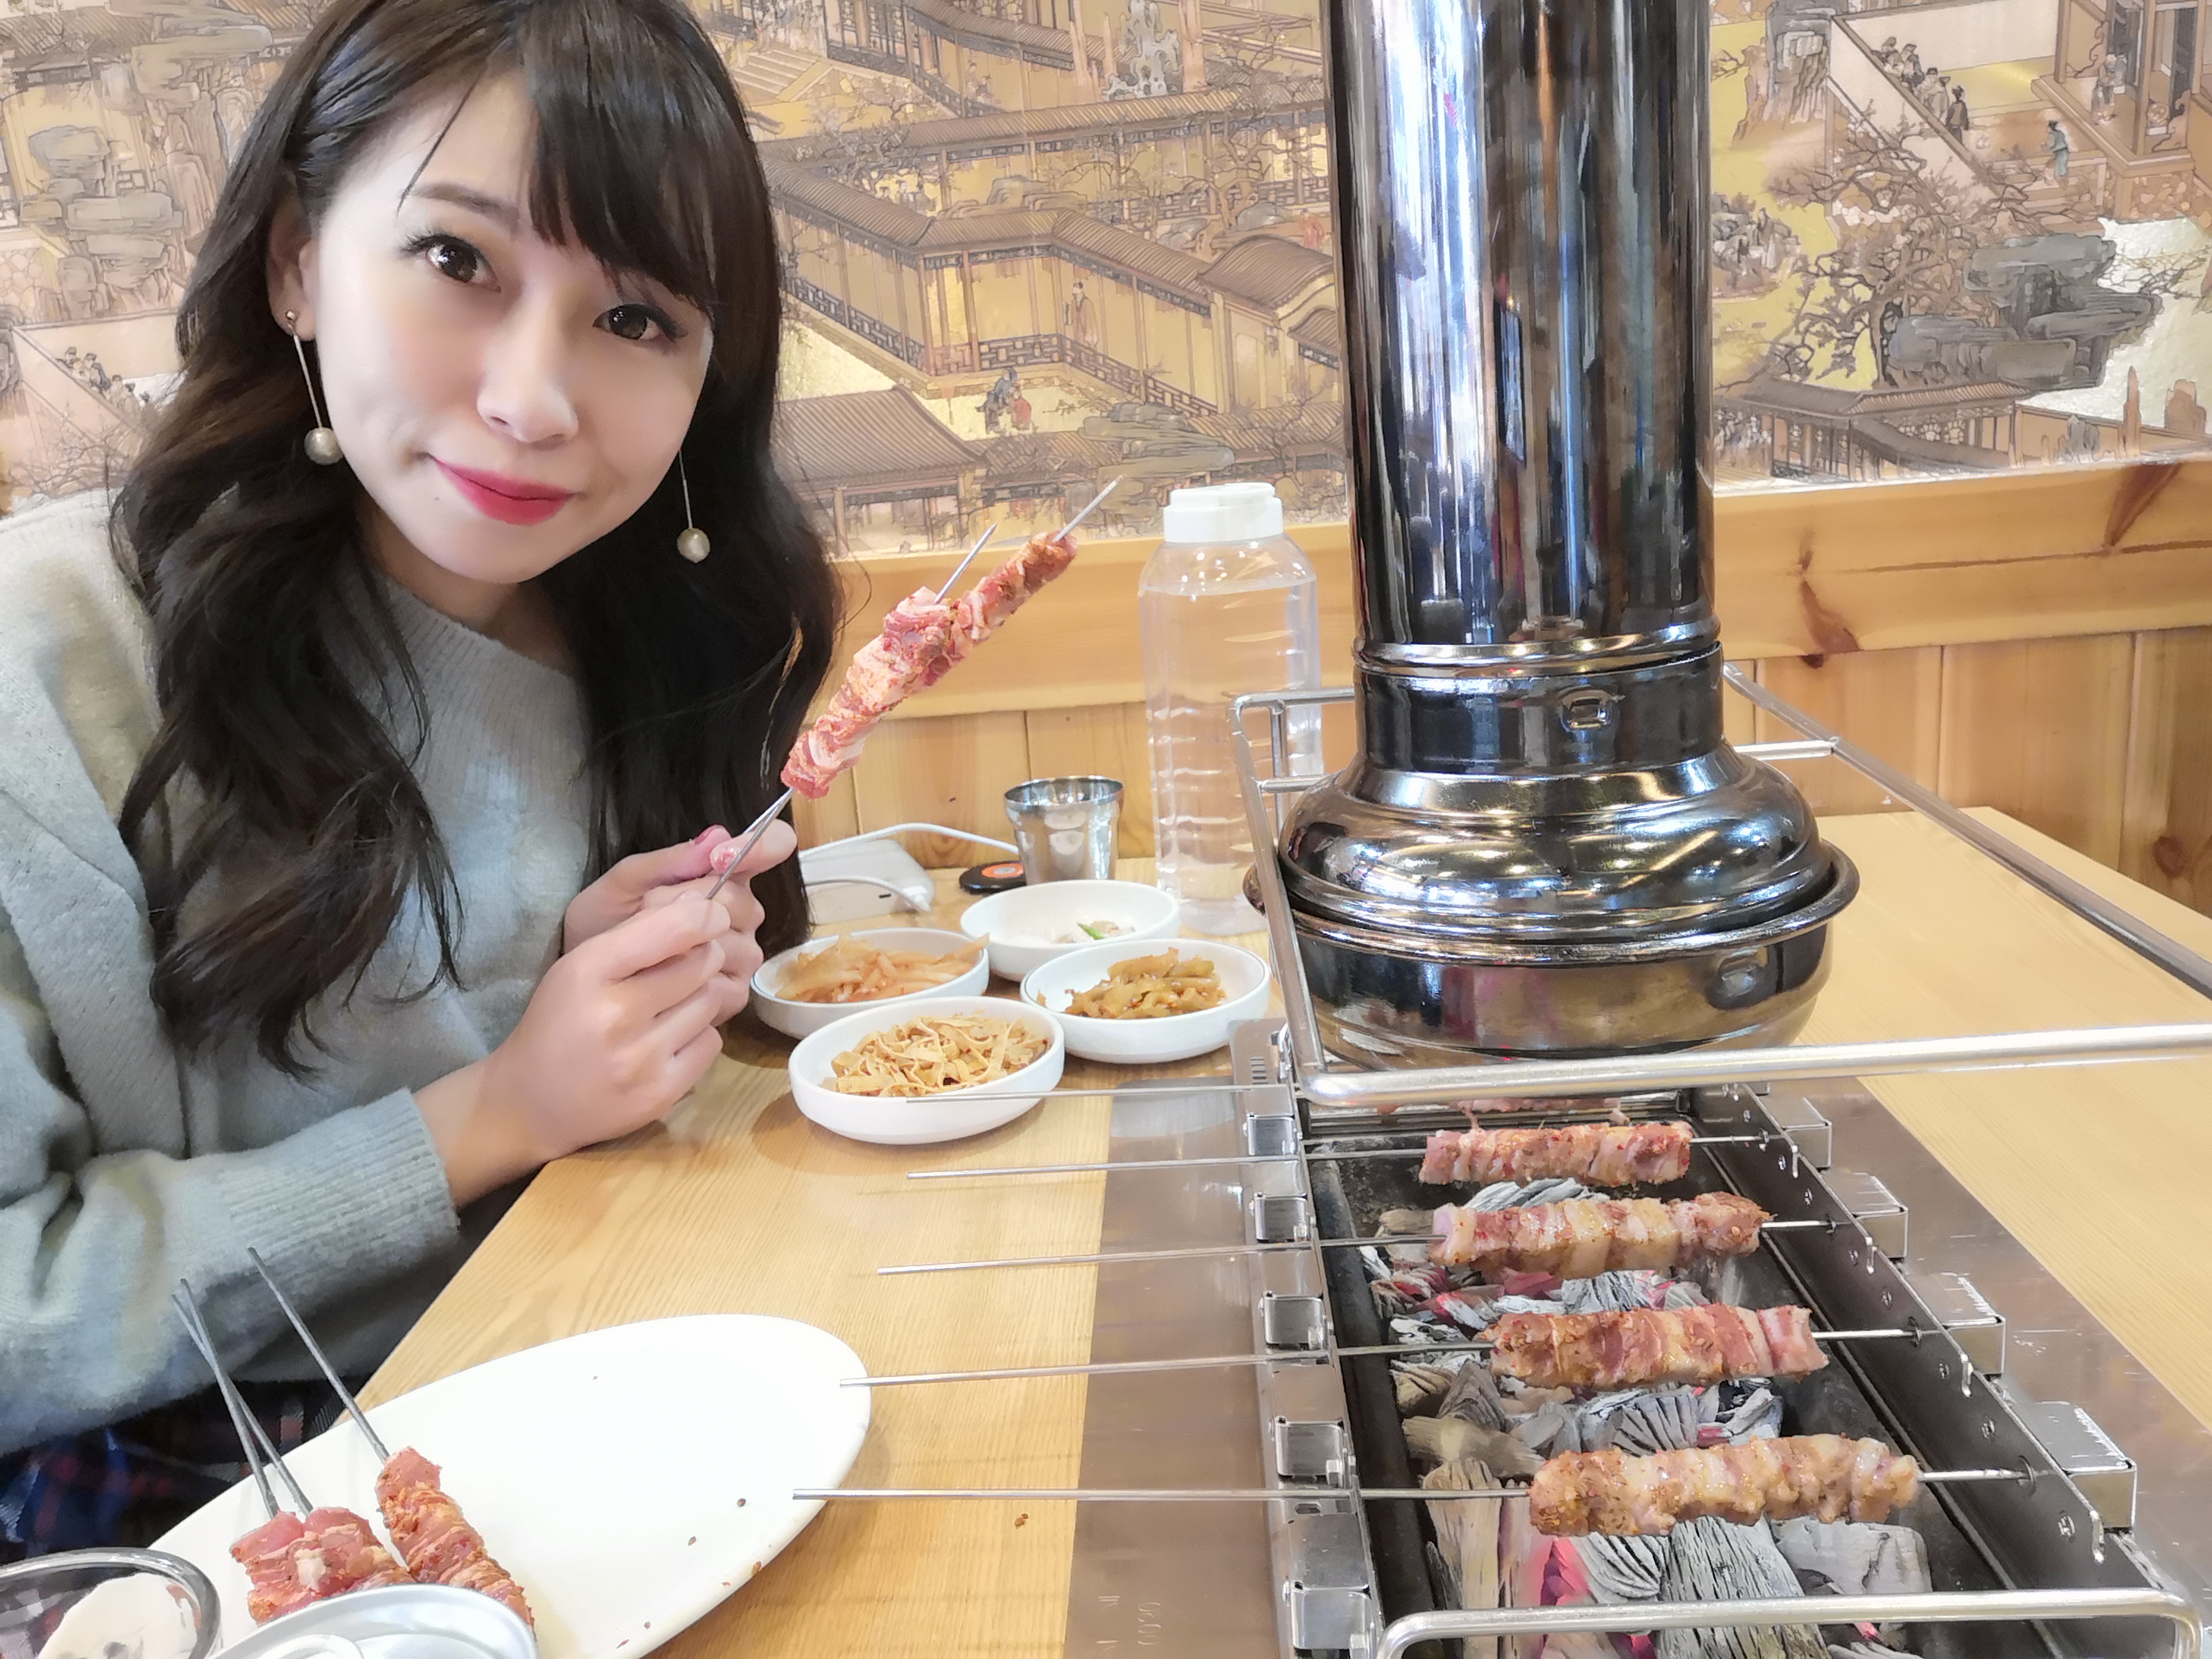 【韓國自由行】首爾一個人自由行,夢幻景點必吃美食住宿行程表 @小環妞 幸福足跡